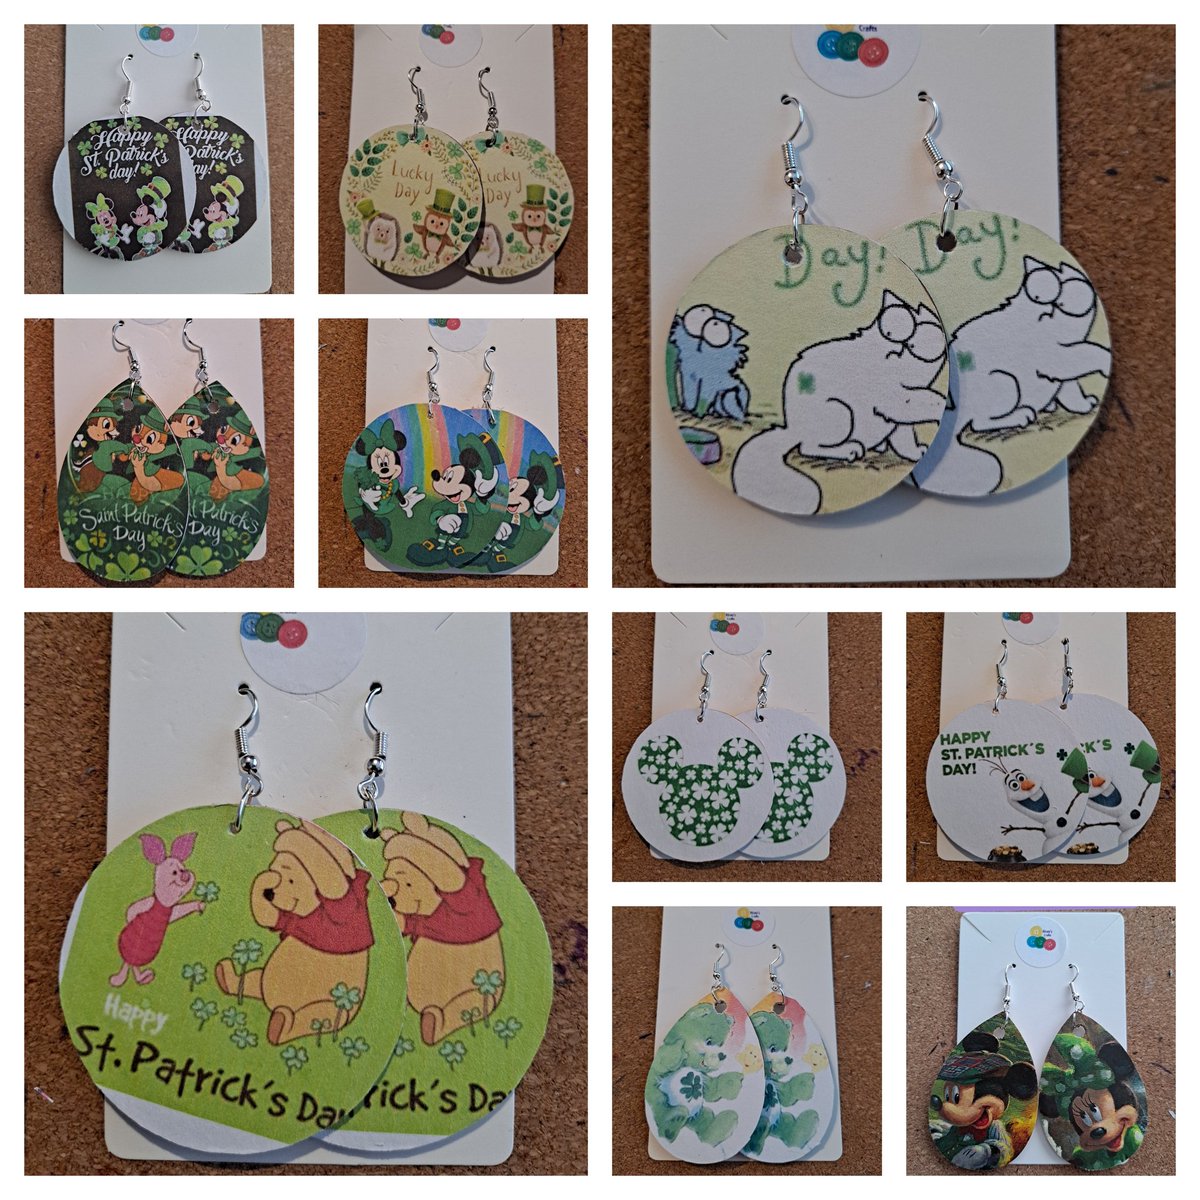 St Patricks Day items on sale now at Kirsty's Crafts. 

#folksy #folksyshop #folksyseller #Disney #stpatricksday #simonscat #care Bears
folksy.com/shops/kirstysc…